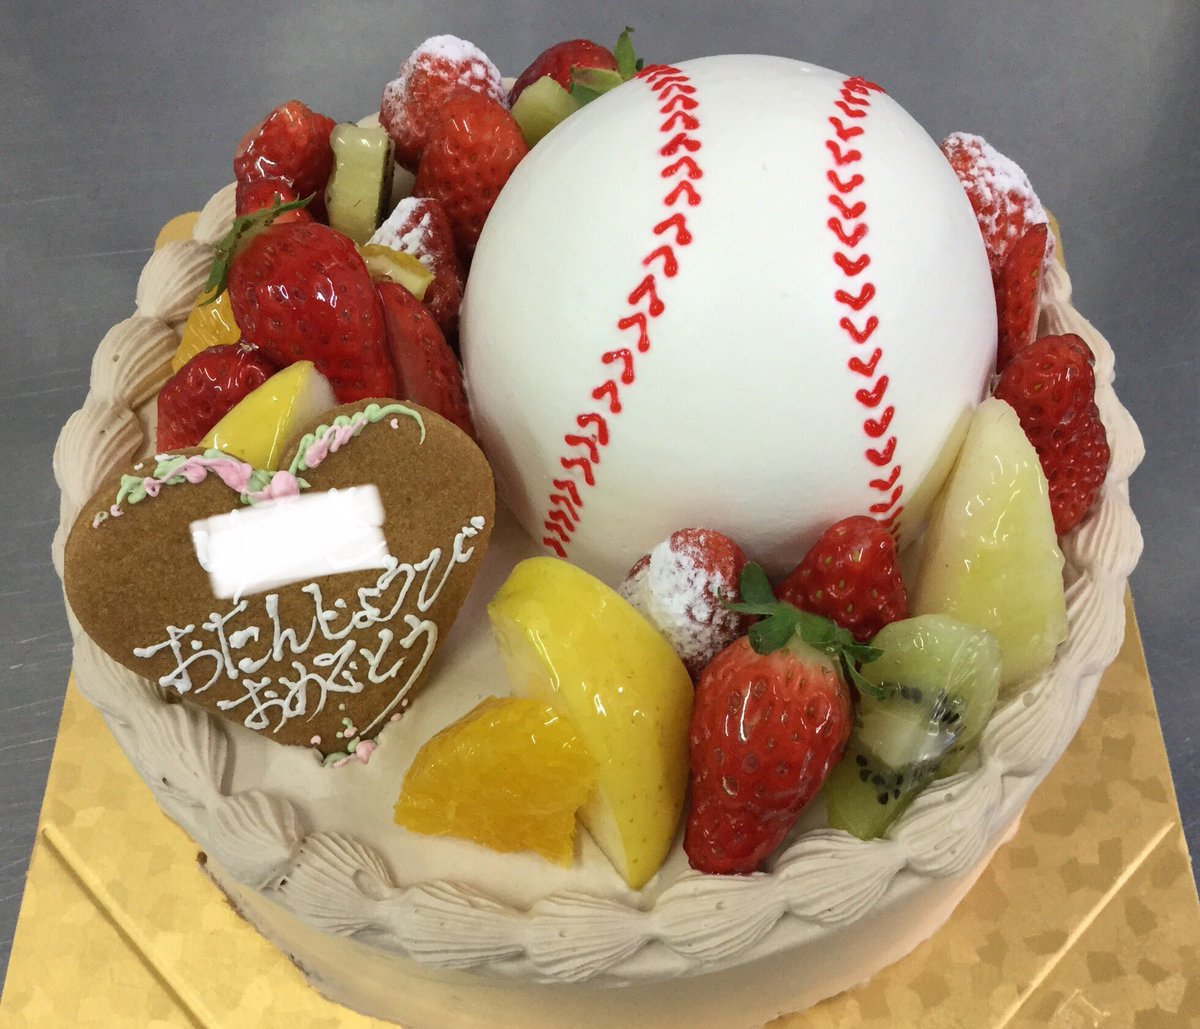 上田市 Tarte タルト Sur Twitter 今日は 野球少年のための デコレーションケーキを作りました 続ける という事はすごいこと 応援してますよ